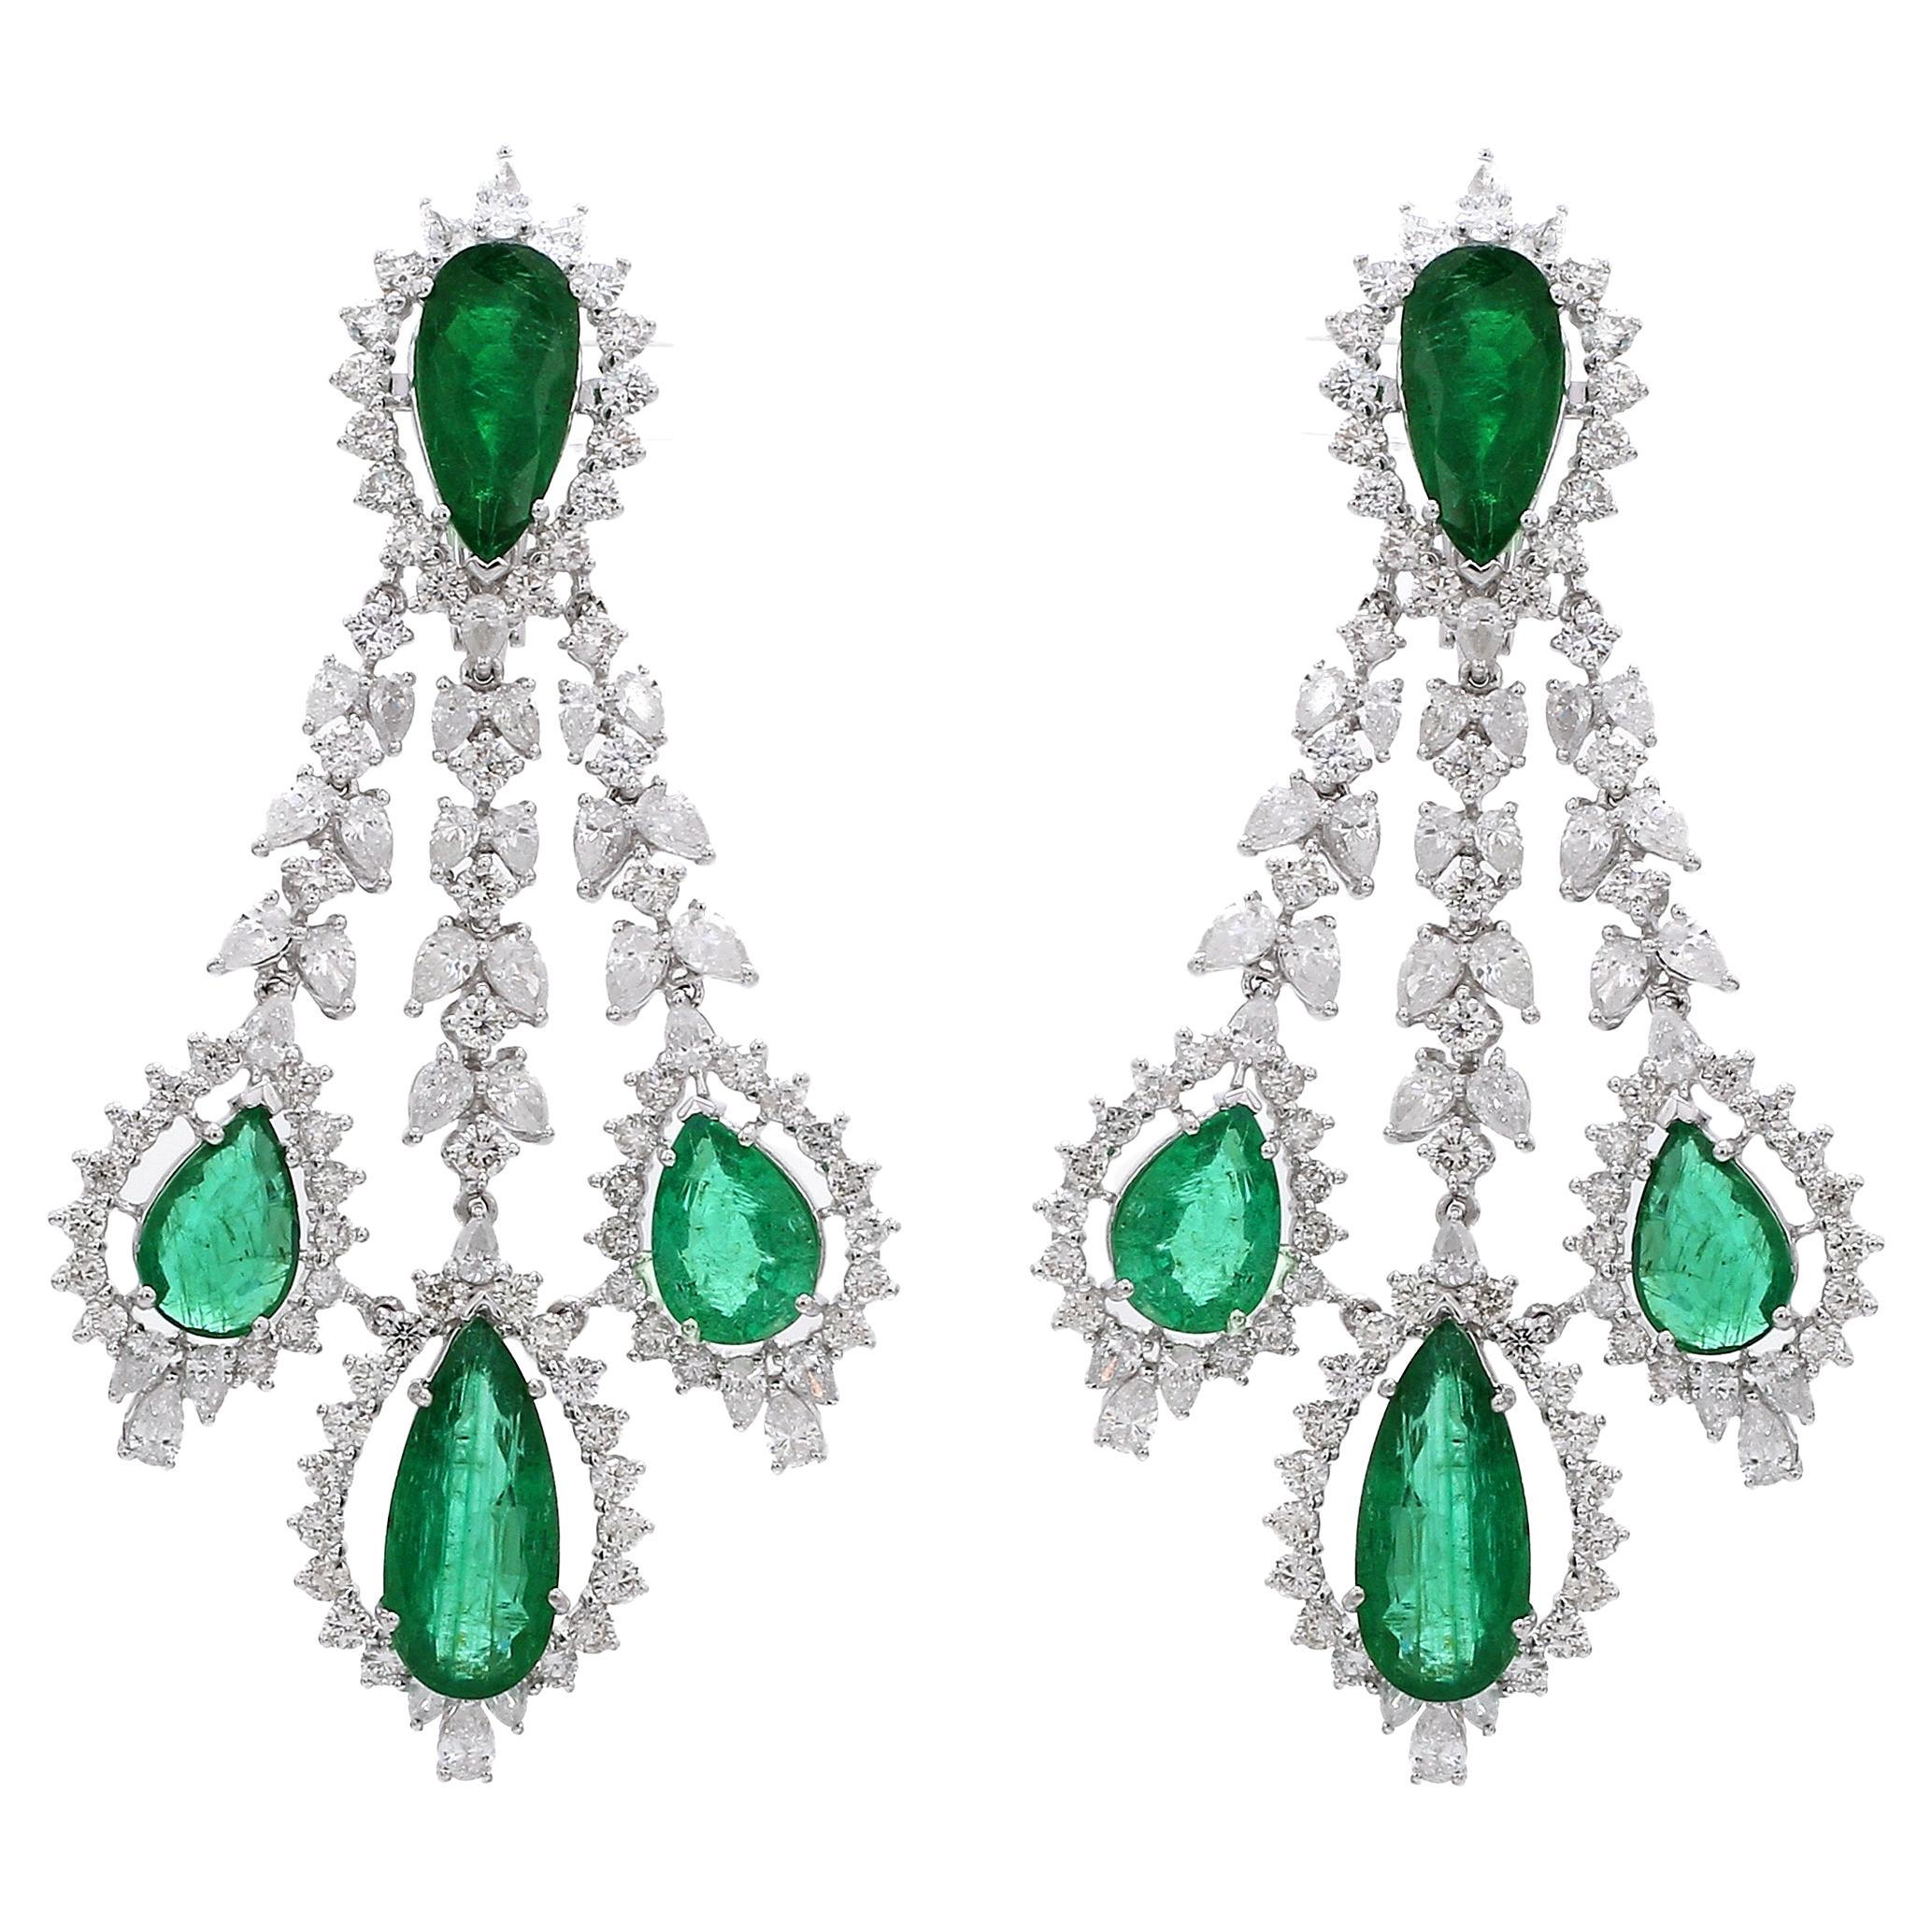 Pear Emerald Chandelier Earrings 18 Karat White Gold Earrings Diamond Jewelry